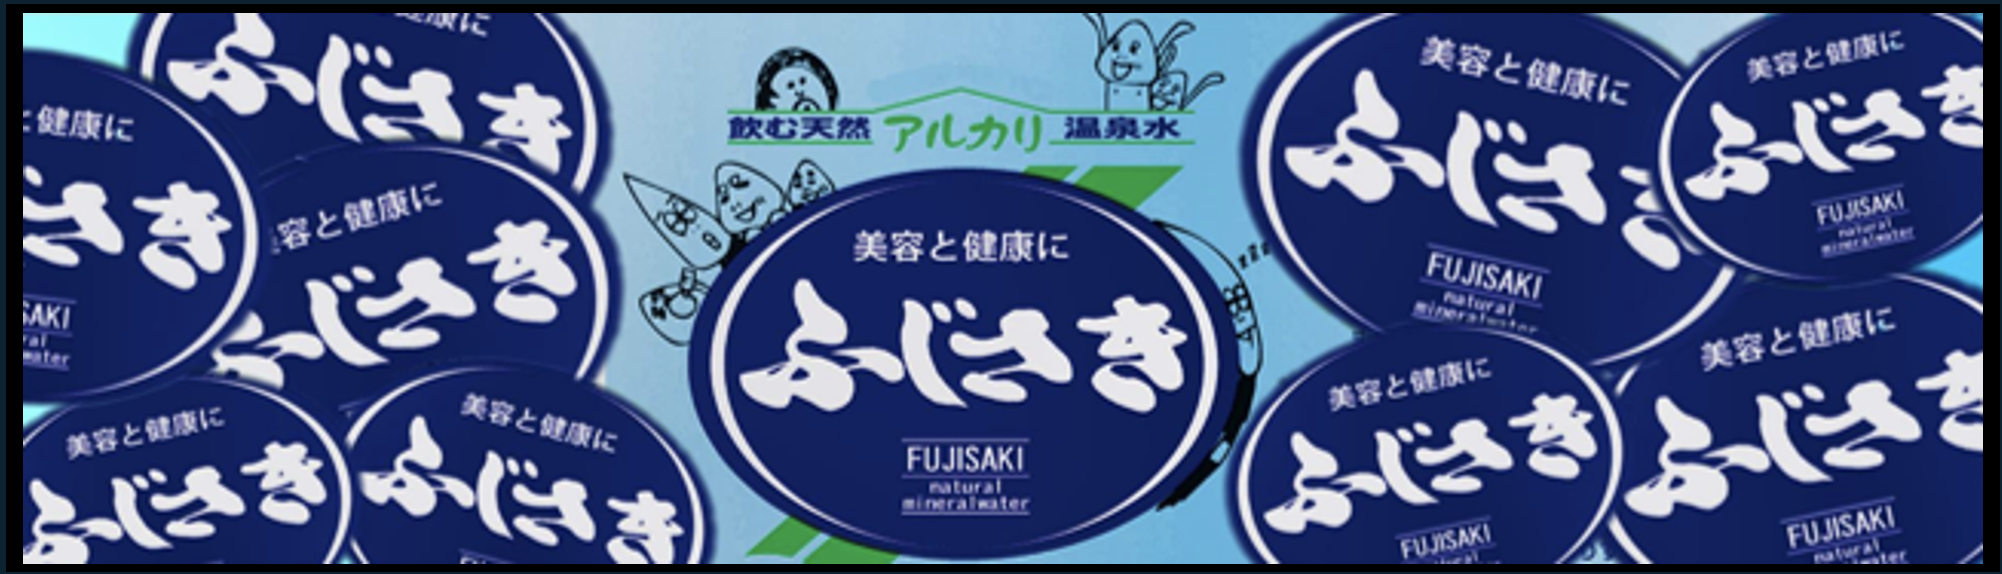 Fujisaki